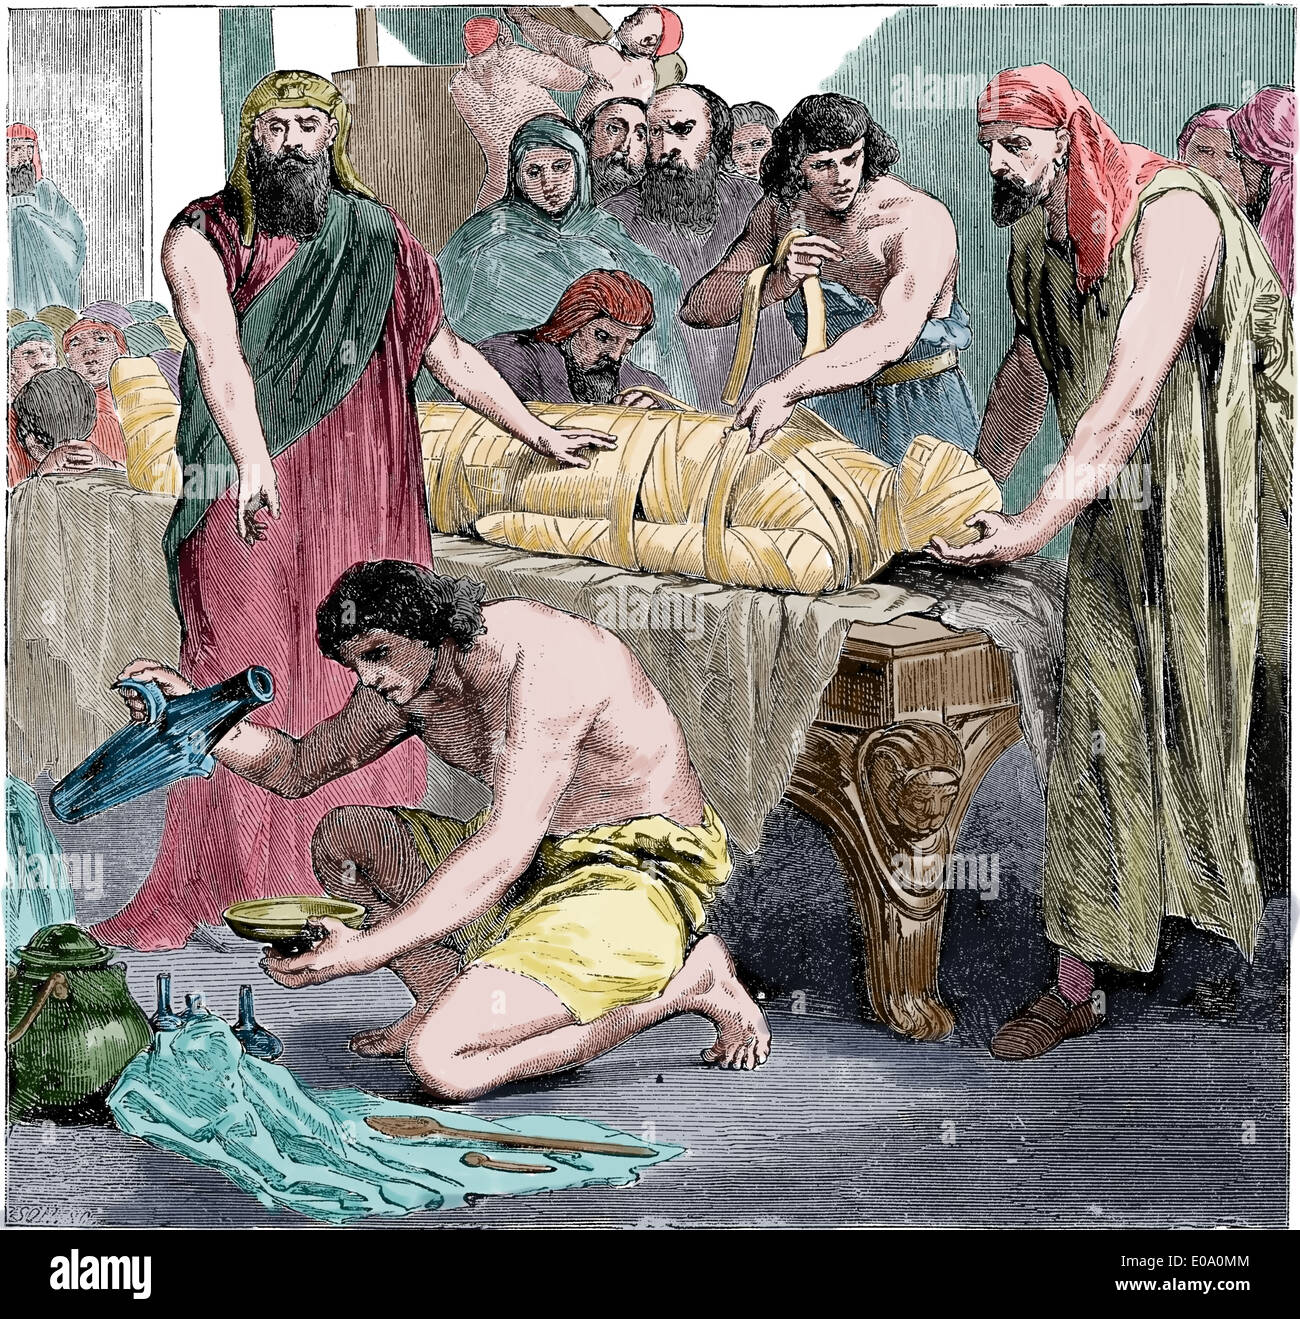 El antiguo Egipto. Embalsaming. Cyclopedia de la Historia Universal, 1885. Grabado. Posteriormente coloración. El Ritual. Foto de stock